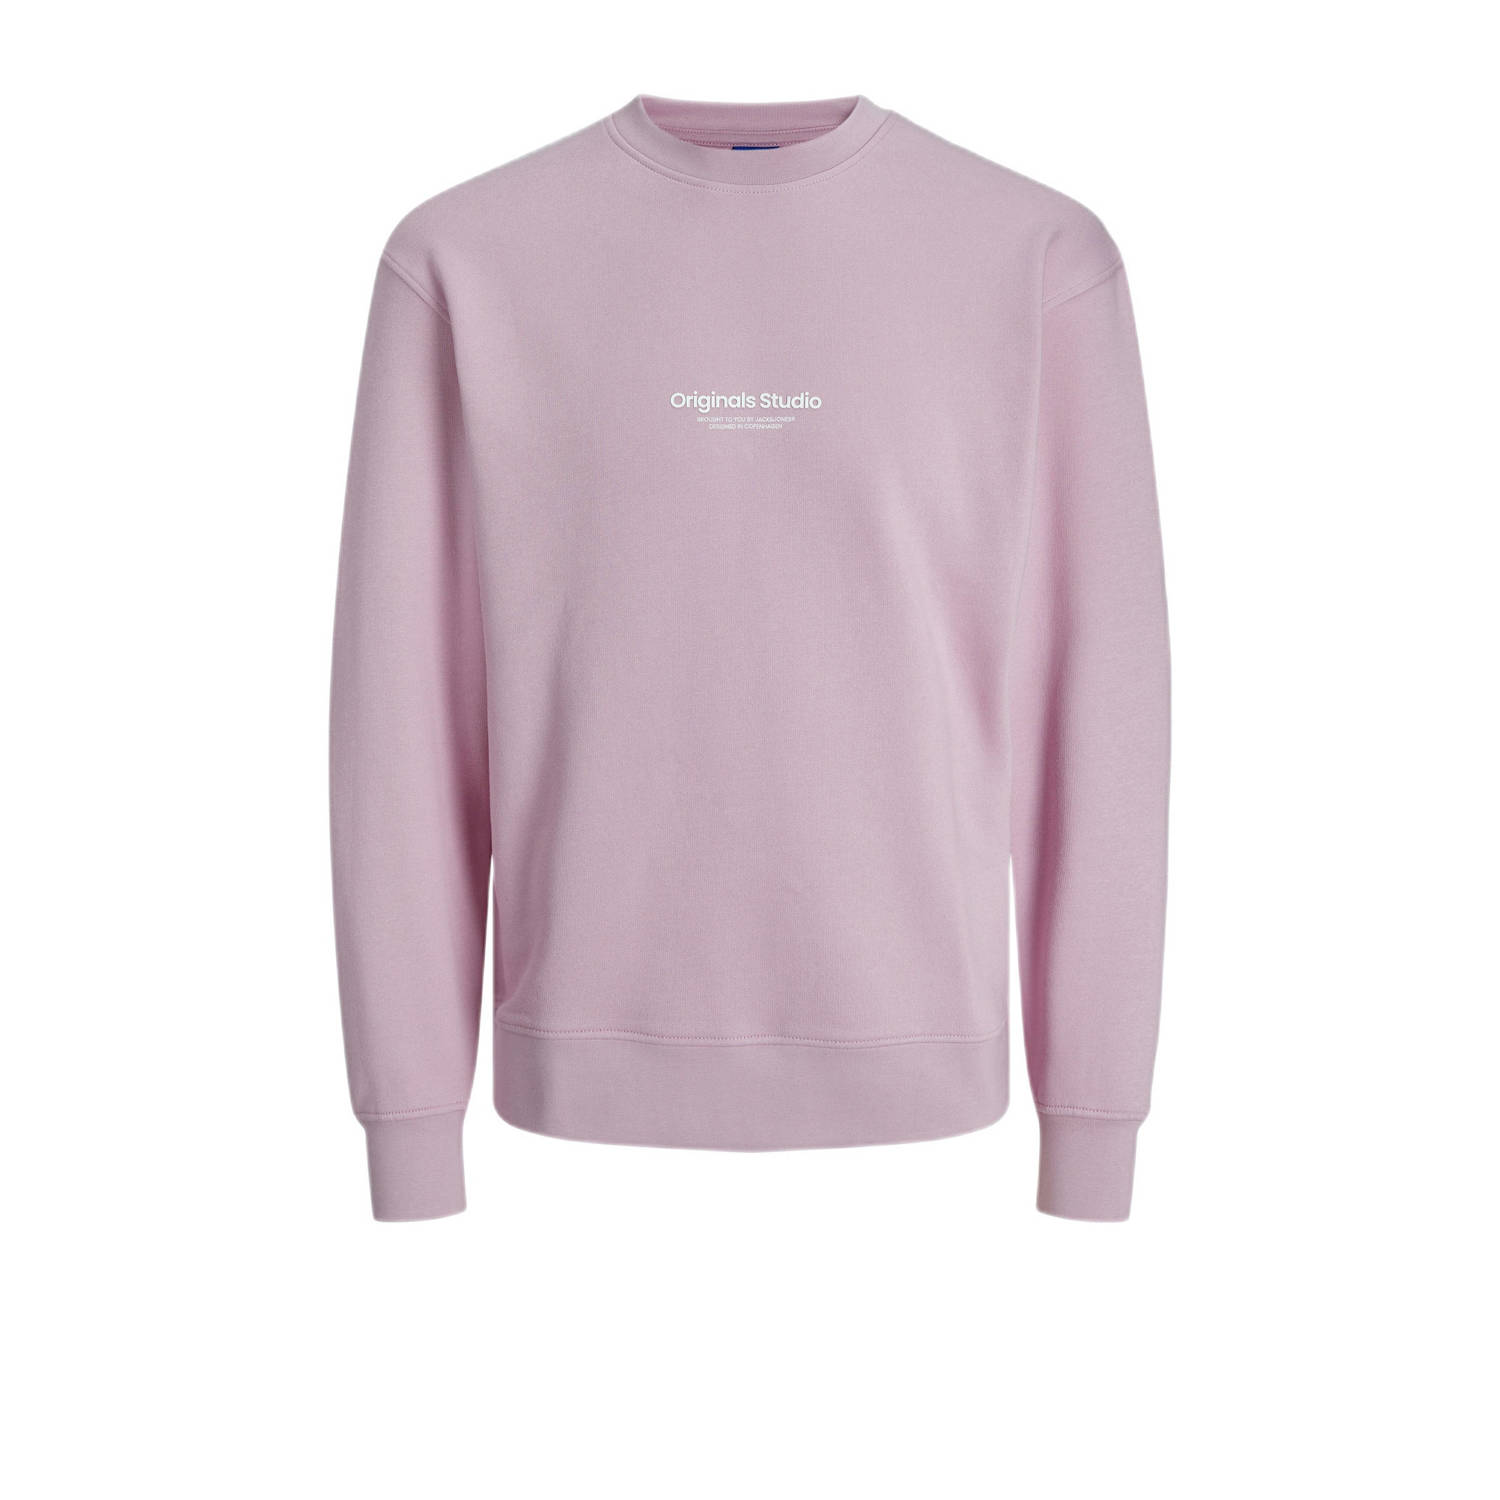 JACK & JONES ORIGINALS sweater JORVESTERBRO met printopdruk pink nectar